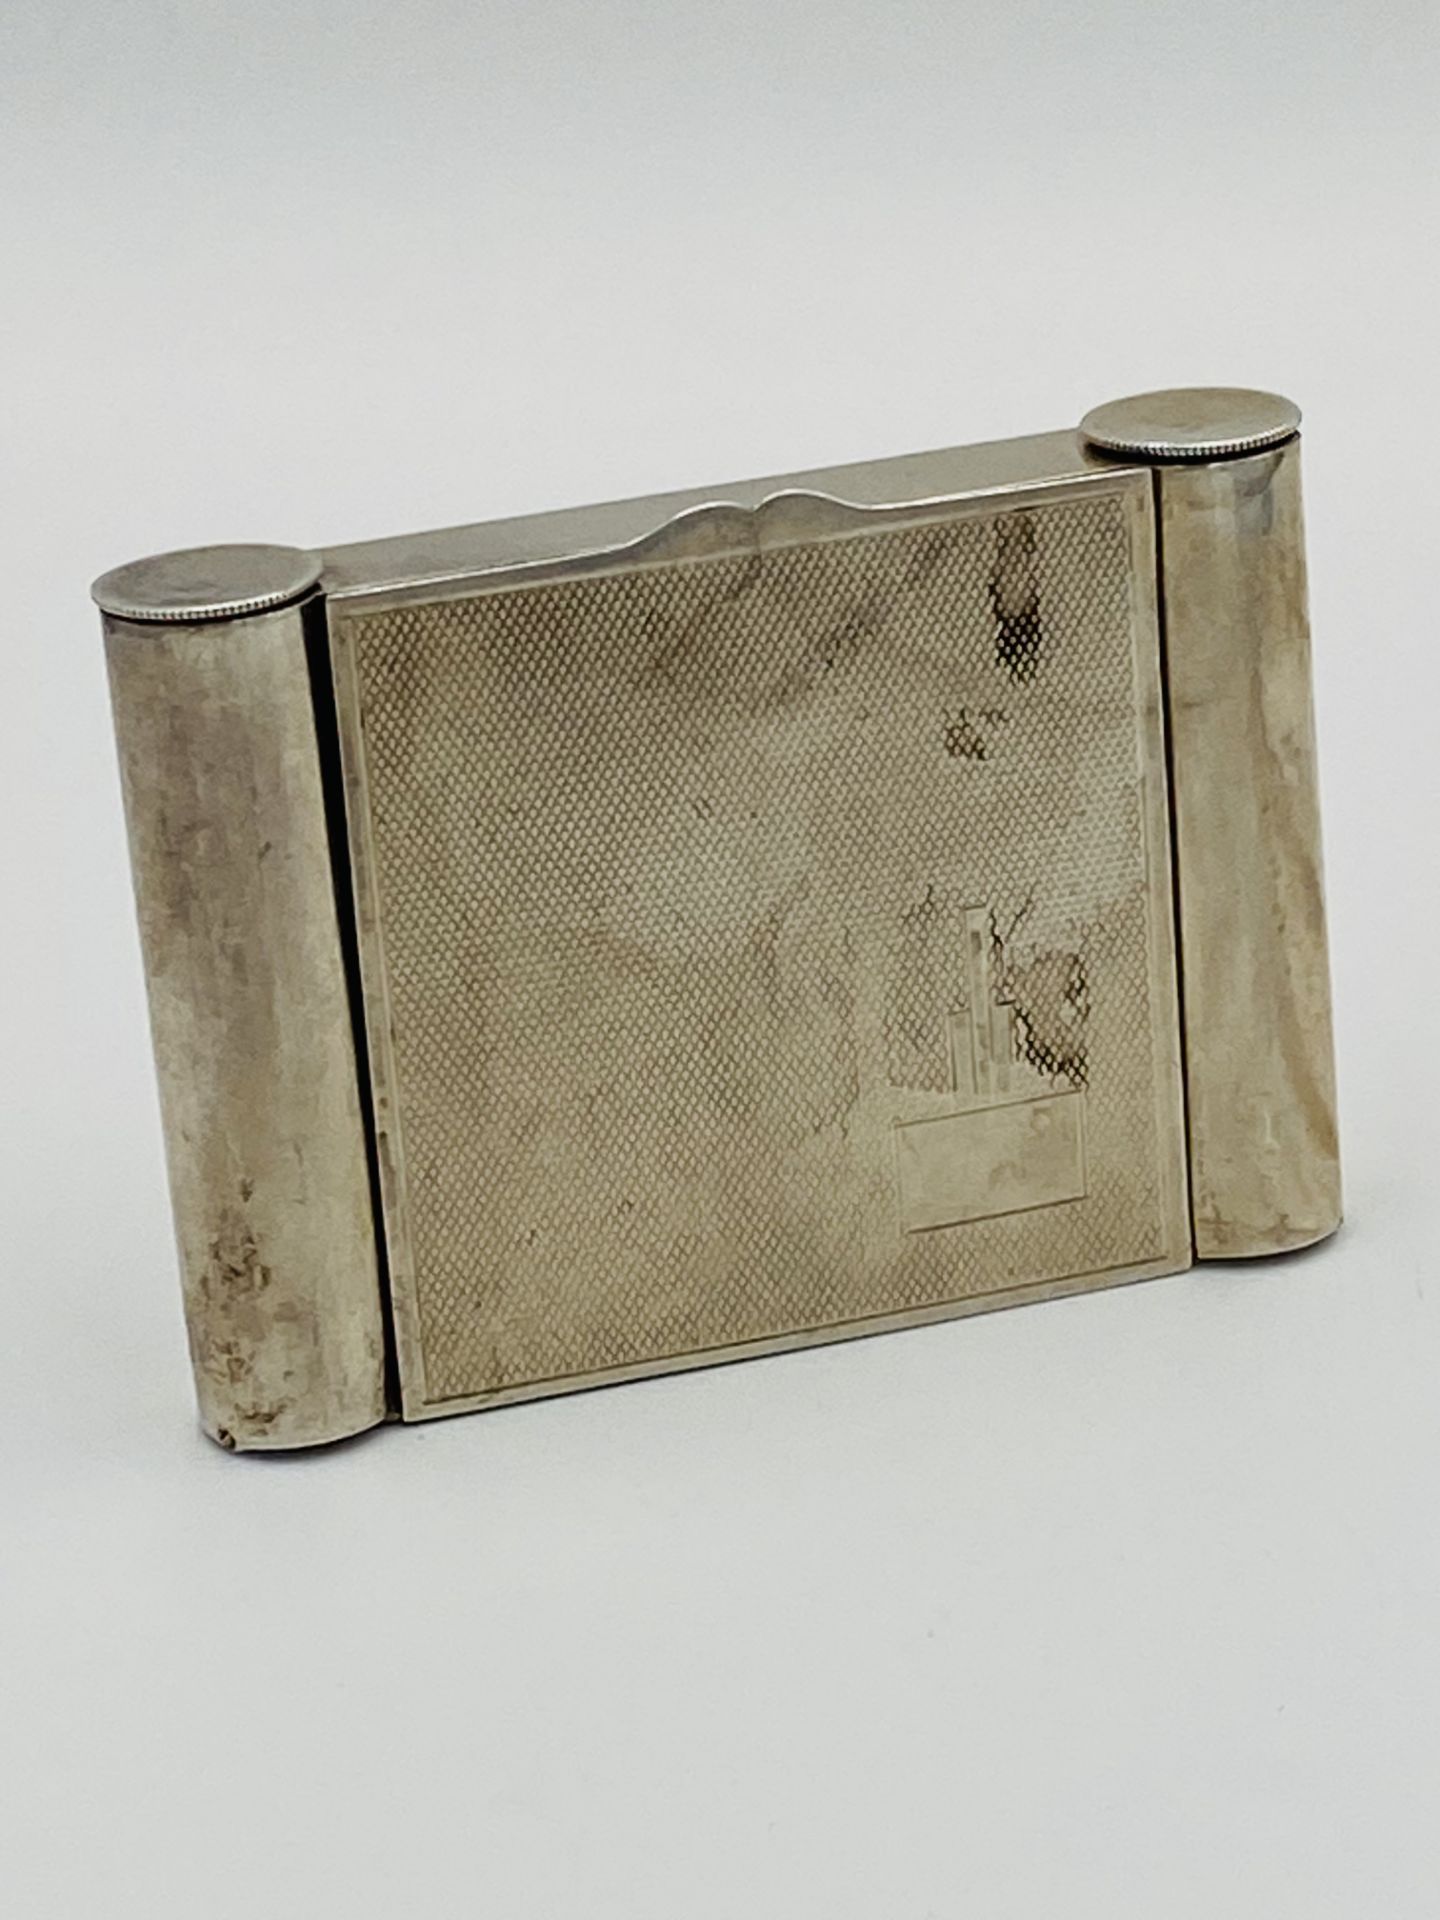 Silver case by Deakin & Francis, Birmingham 1934 - Image 3 of 5